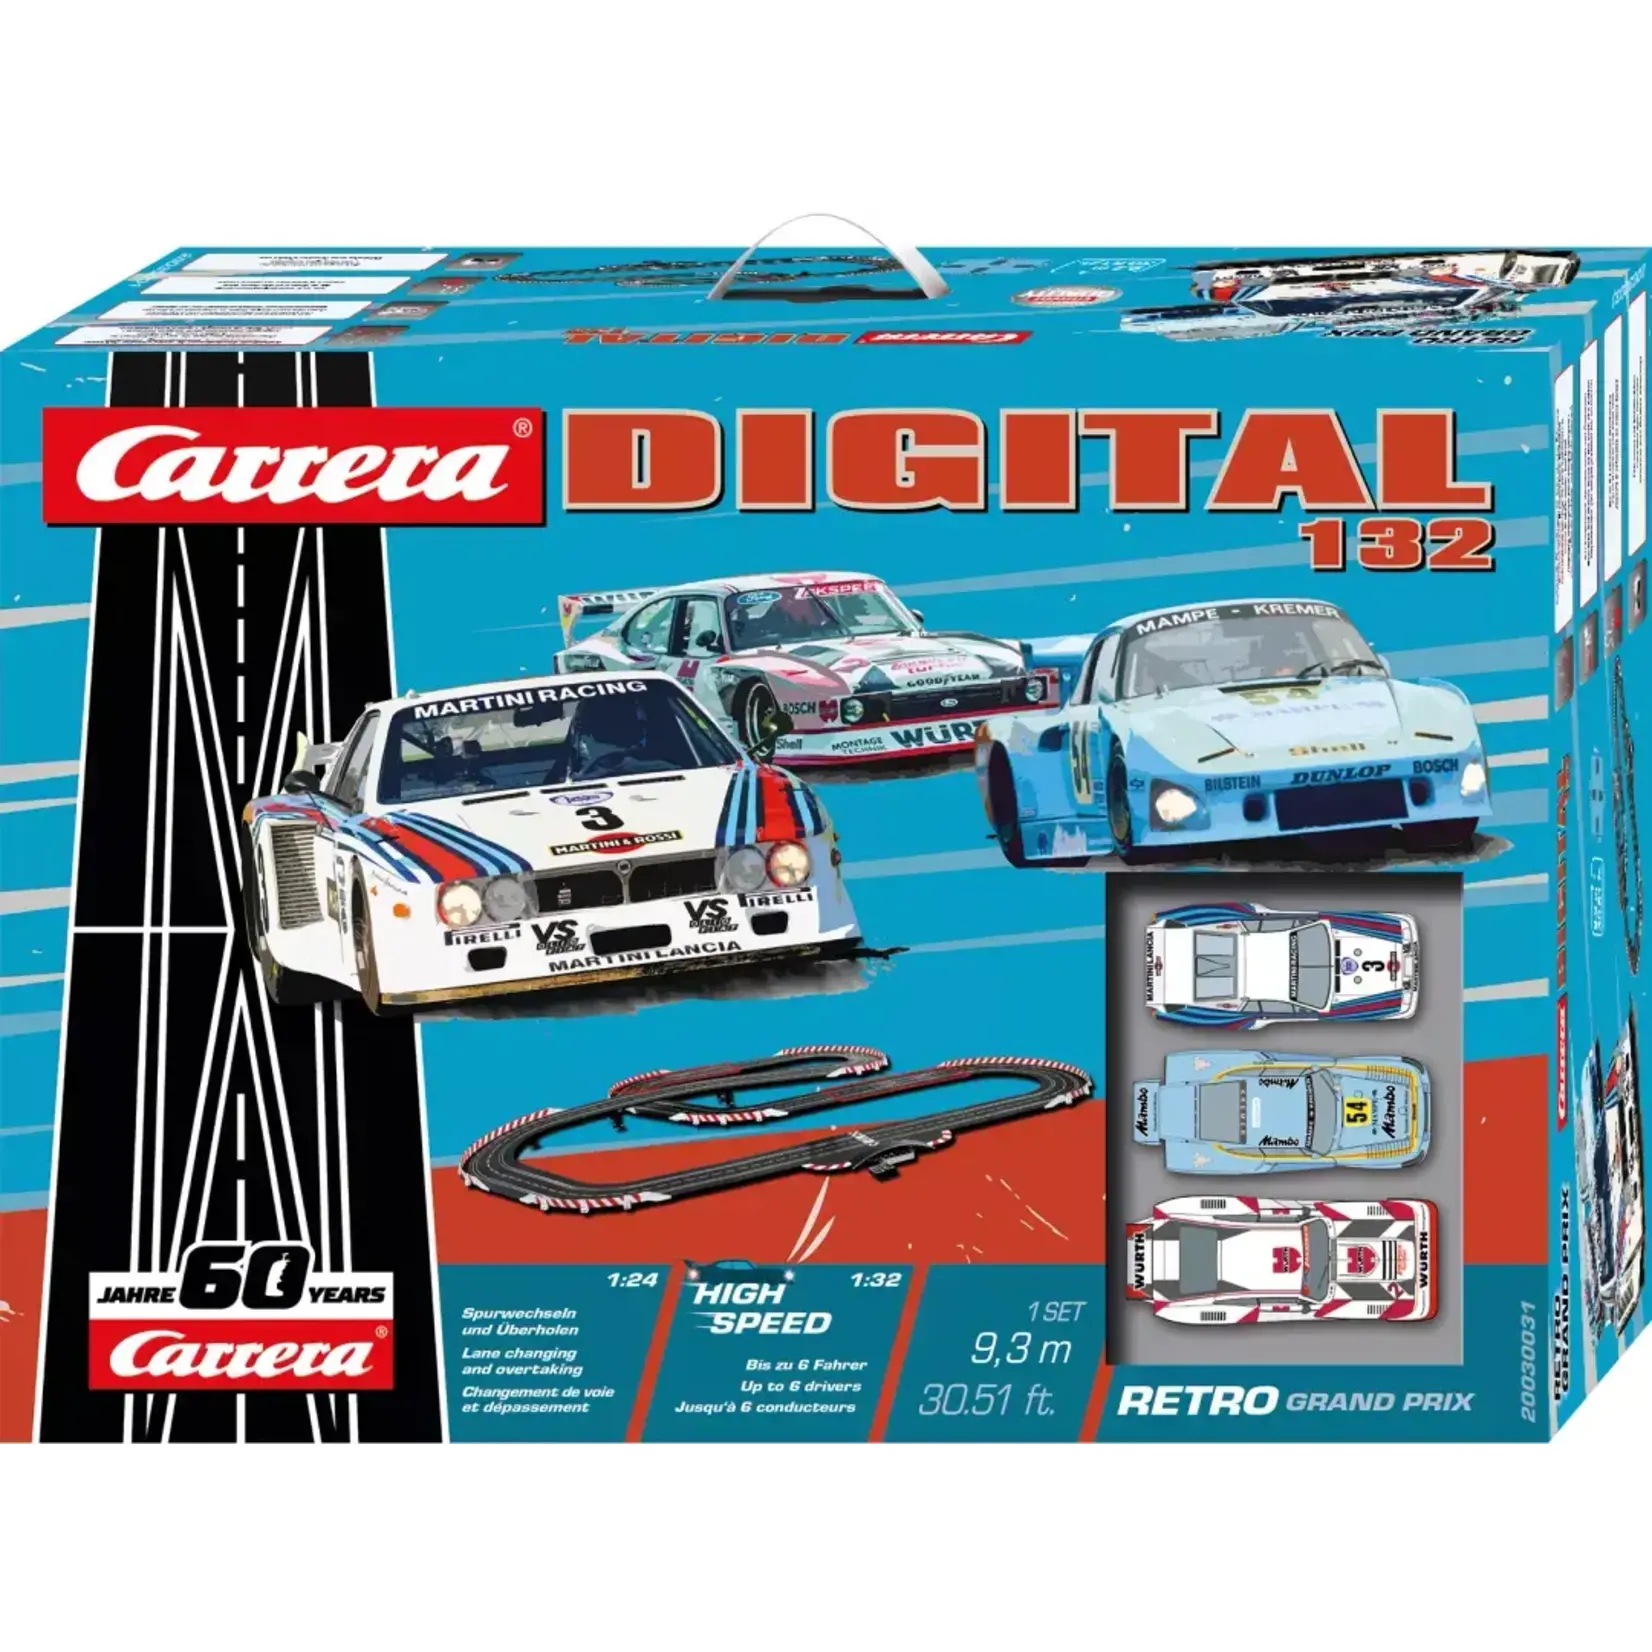 Carrera 1:32 Retro Grand Prix Slot Car Set